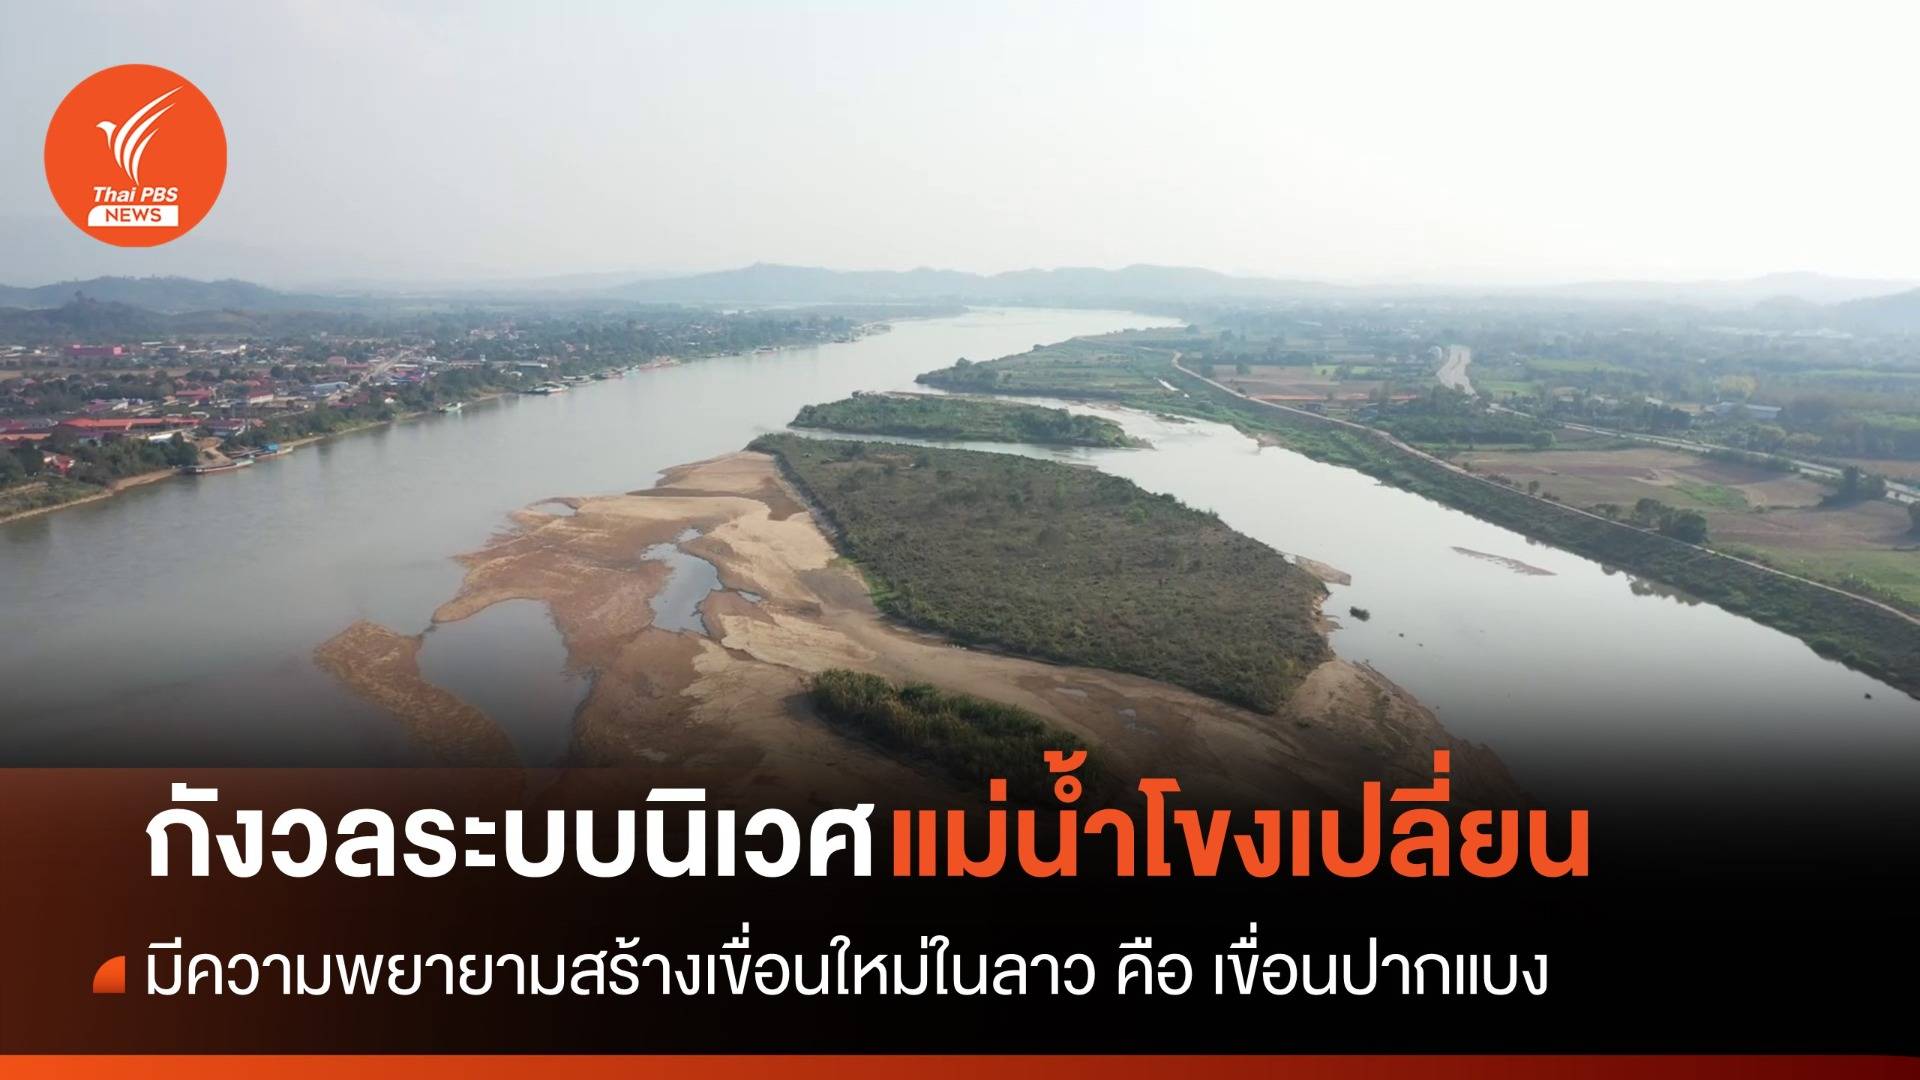 แม่น้ำโขงทางตอนบนของไทย ปีนี้สามารถเดินเรือตลอดทั้งปี